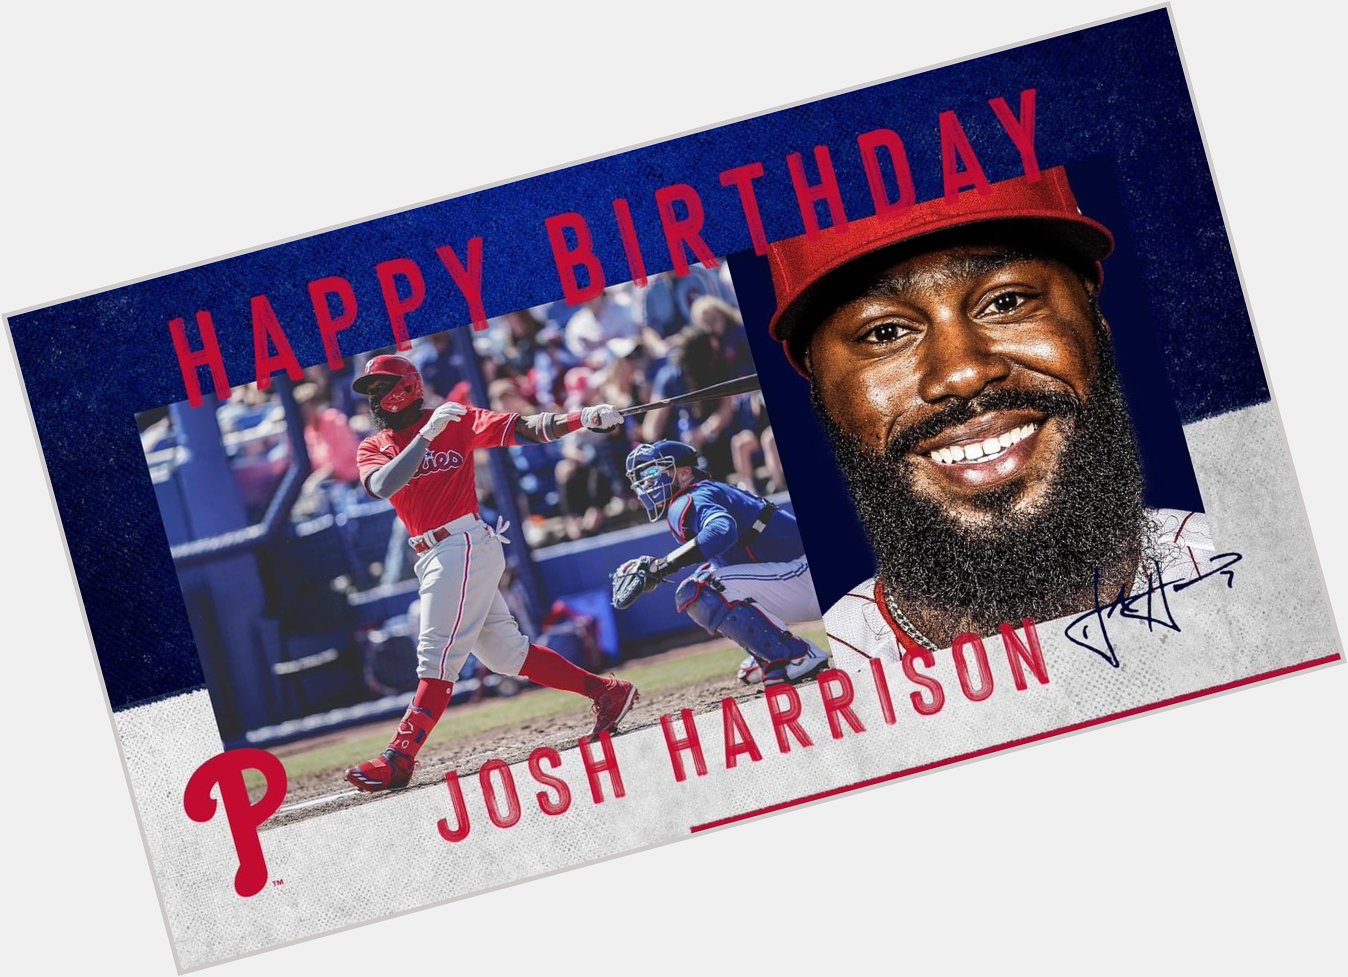 Happy 33rd birthday to infielder Josh Harrison. 